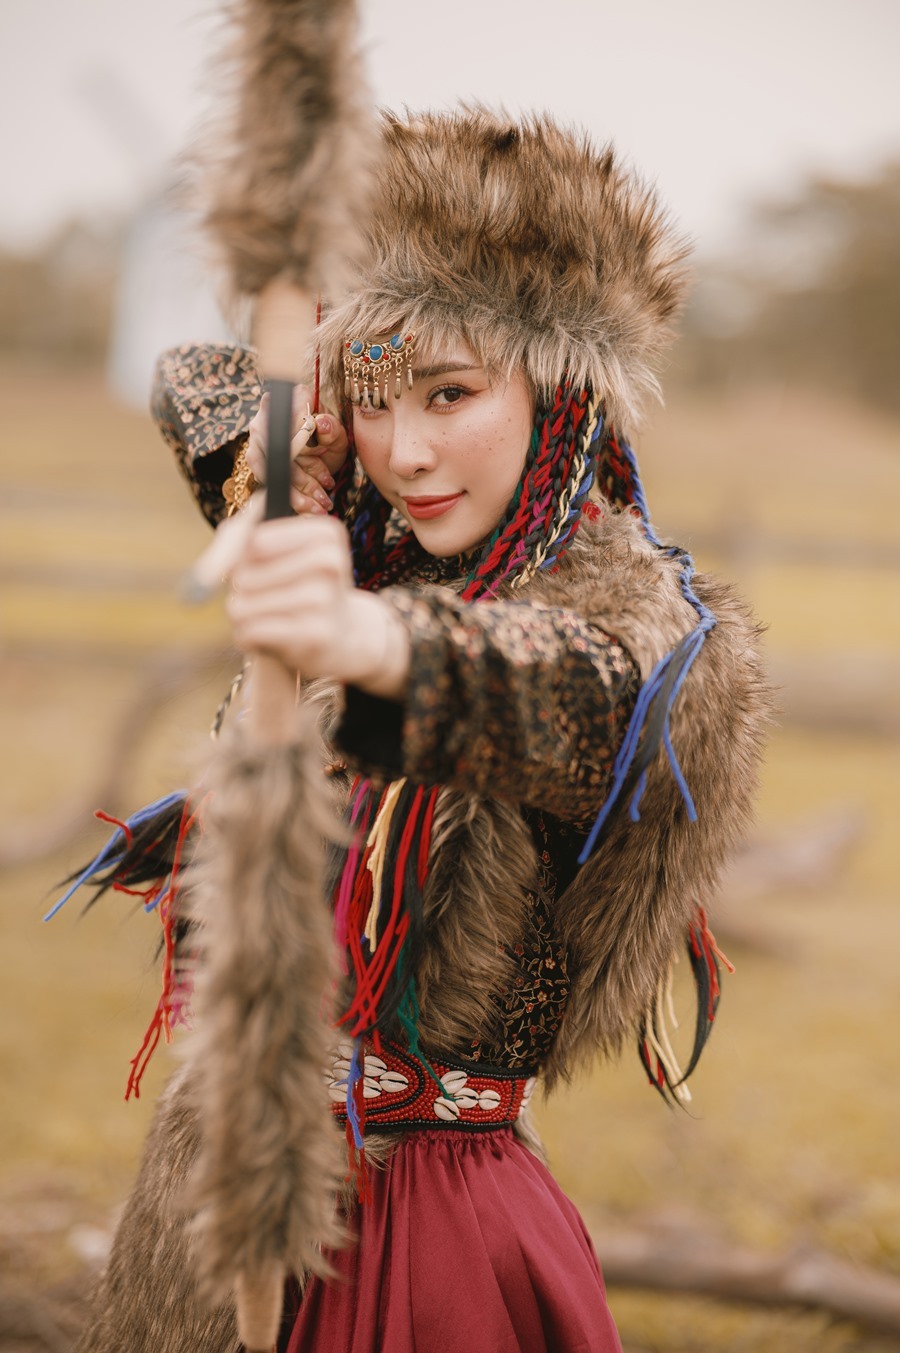 'Cá sấu chúa' Quỳnh Nga hóa công chúa Mông Cổ, cưỡi ngựa bắn cung đẹp như phim cổ trang Hoa ngữ - Ảnh 1